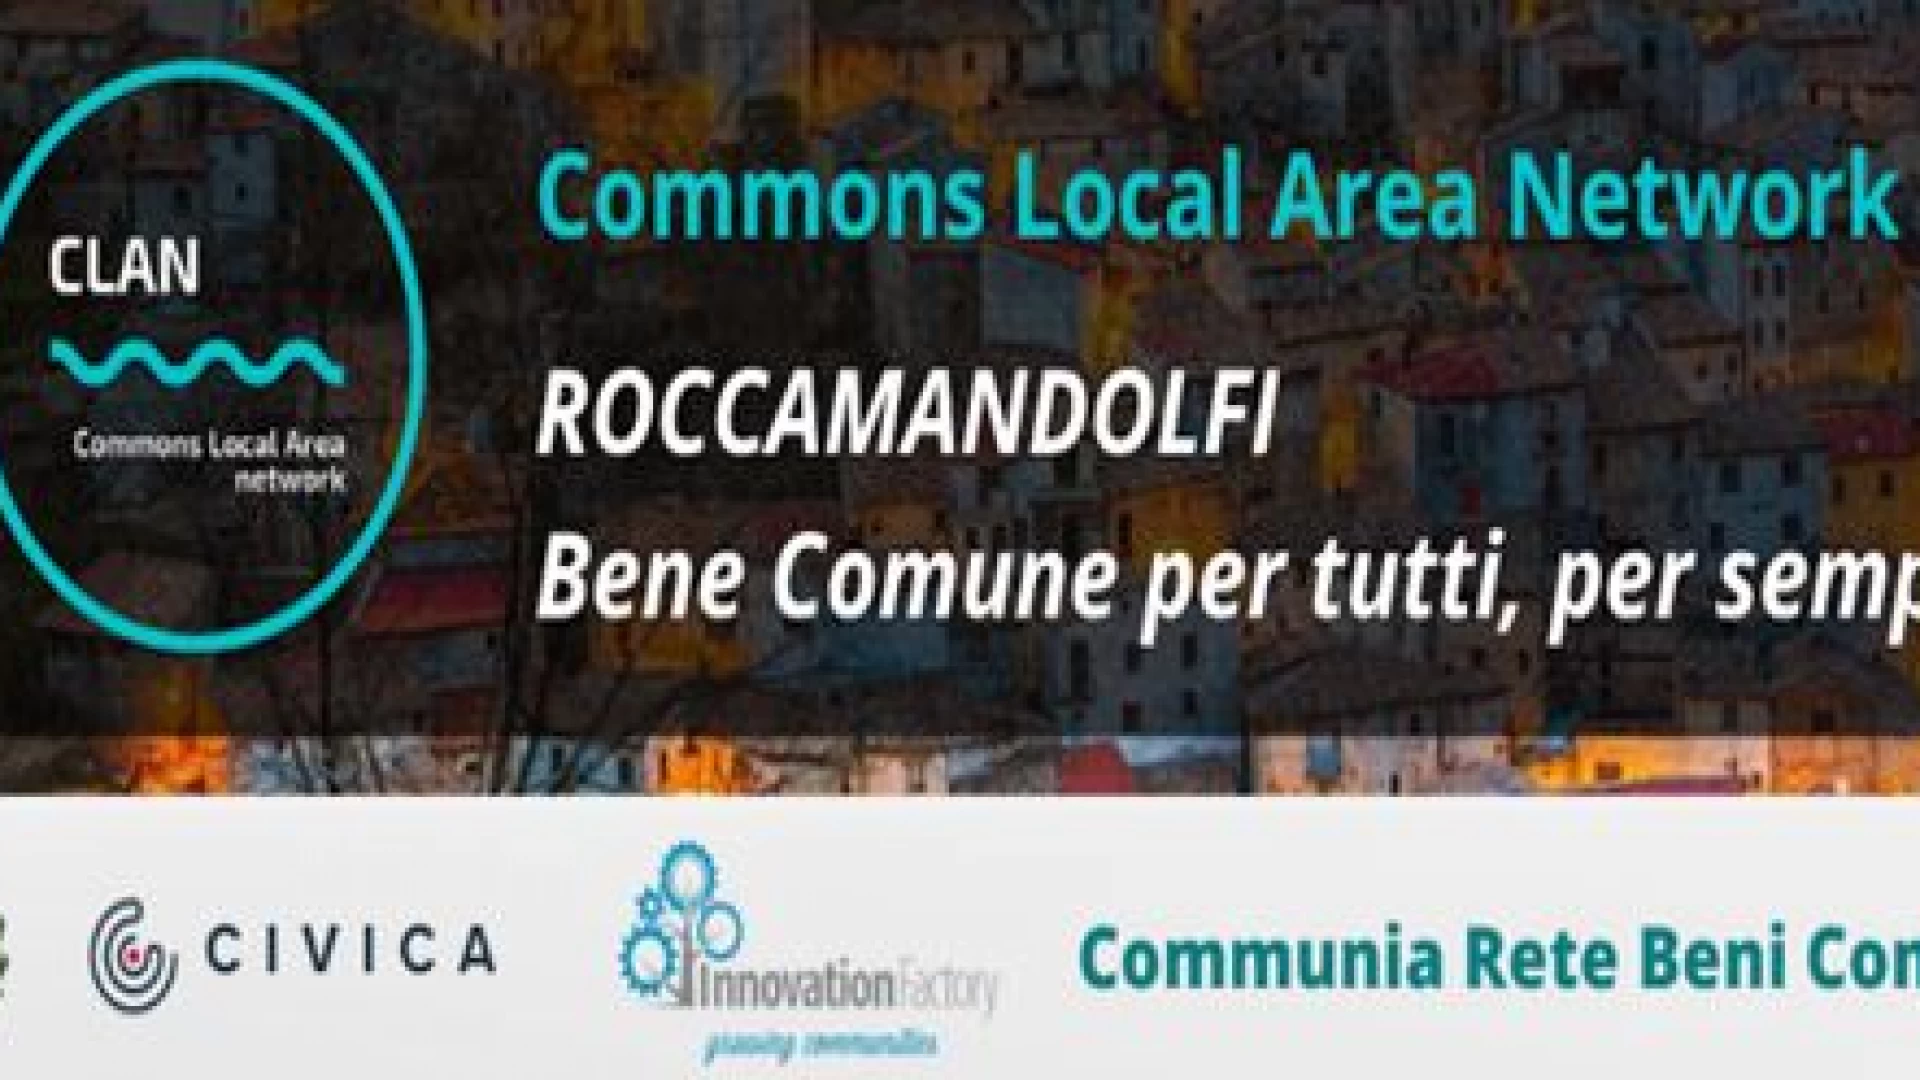 Roccamandolfi: Al via il Progetto CLAN Commons Local Area Network